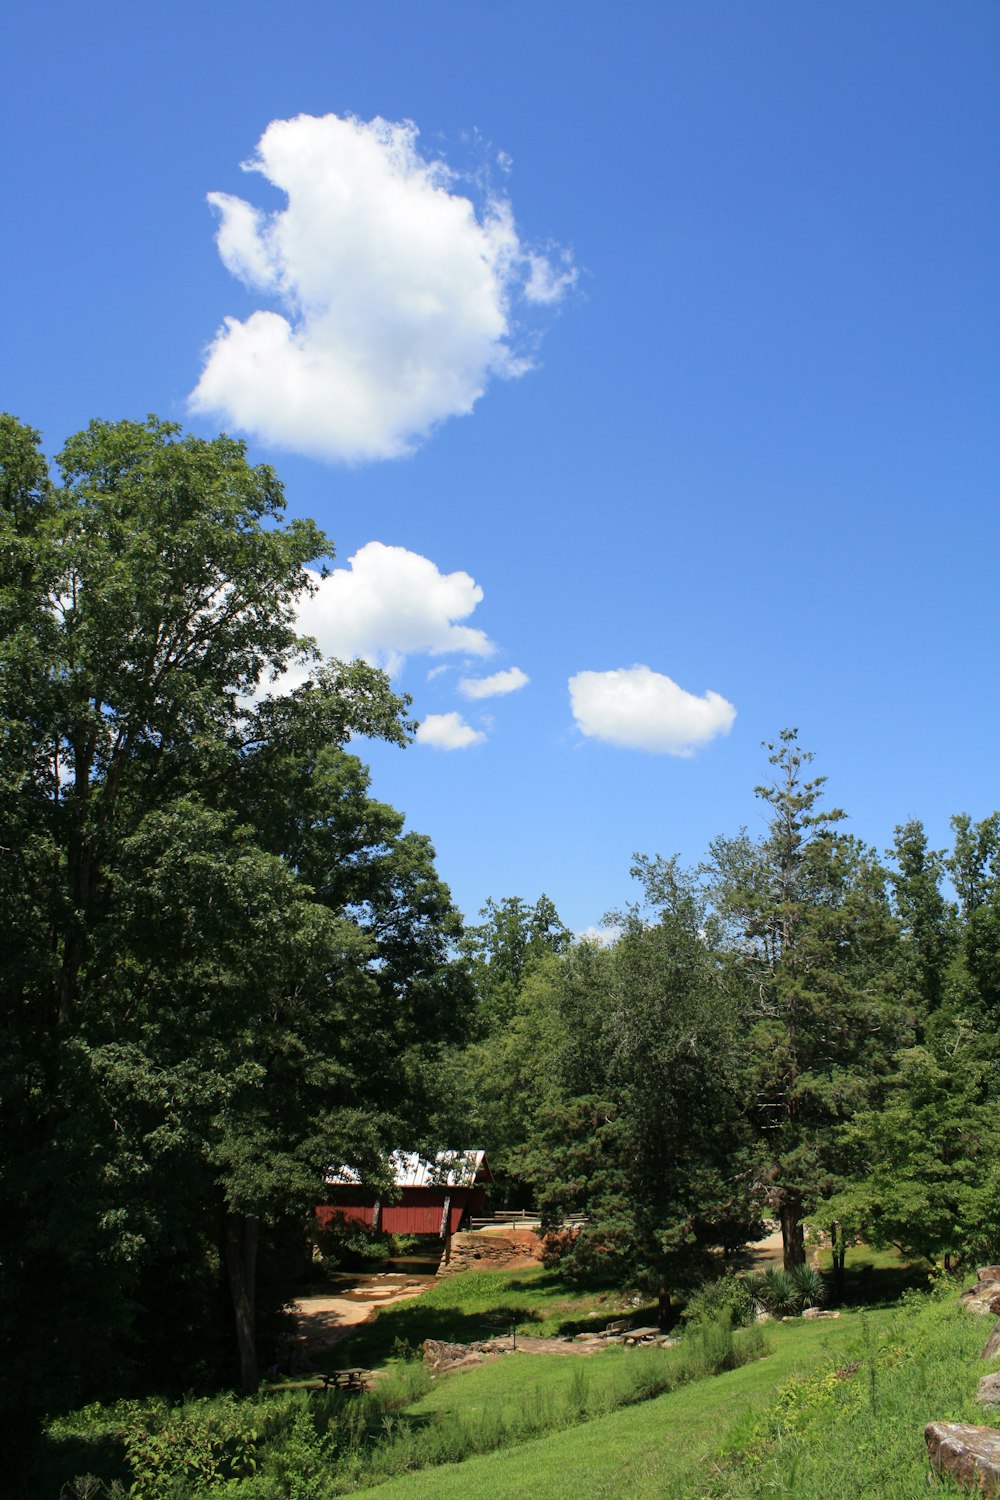 green-leaf tree under blue sky during daytime